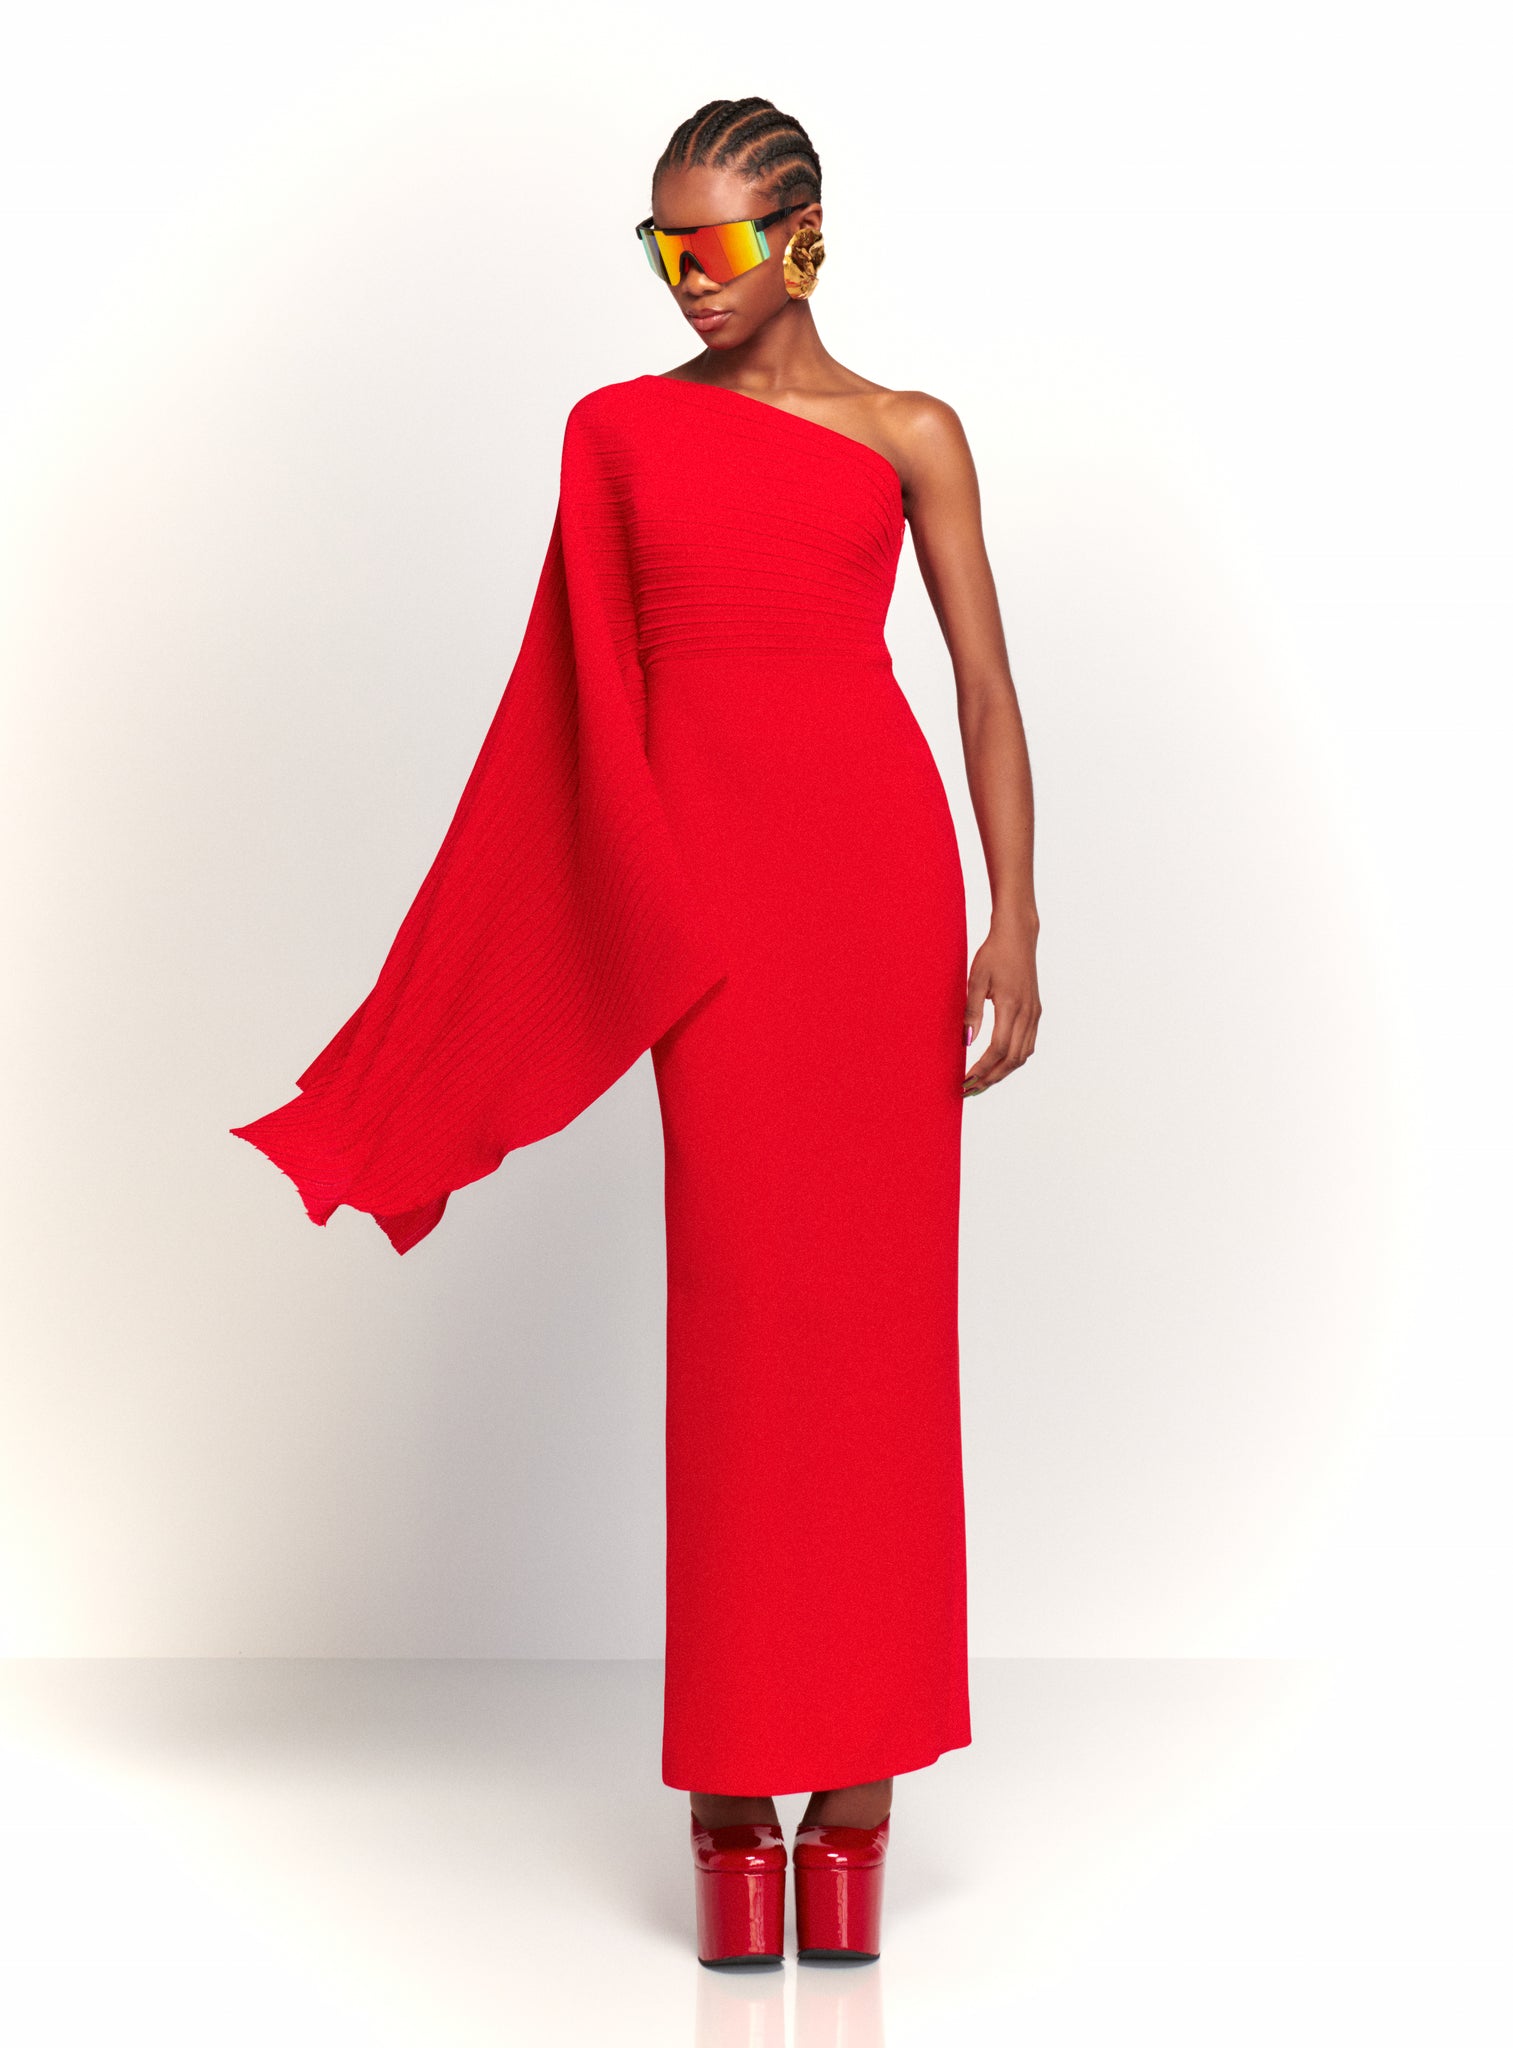 The Lillia Maxi Dress in Red